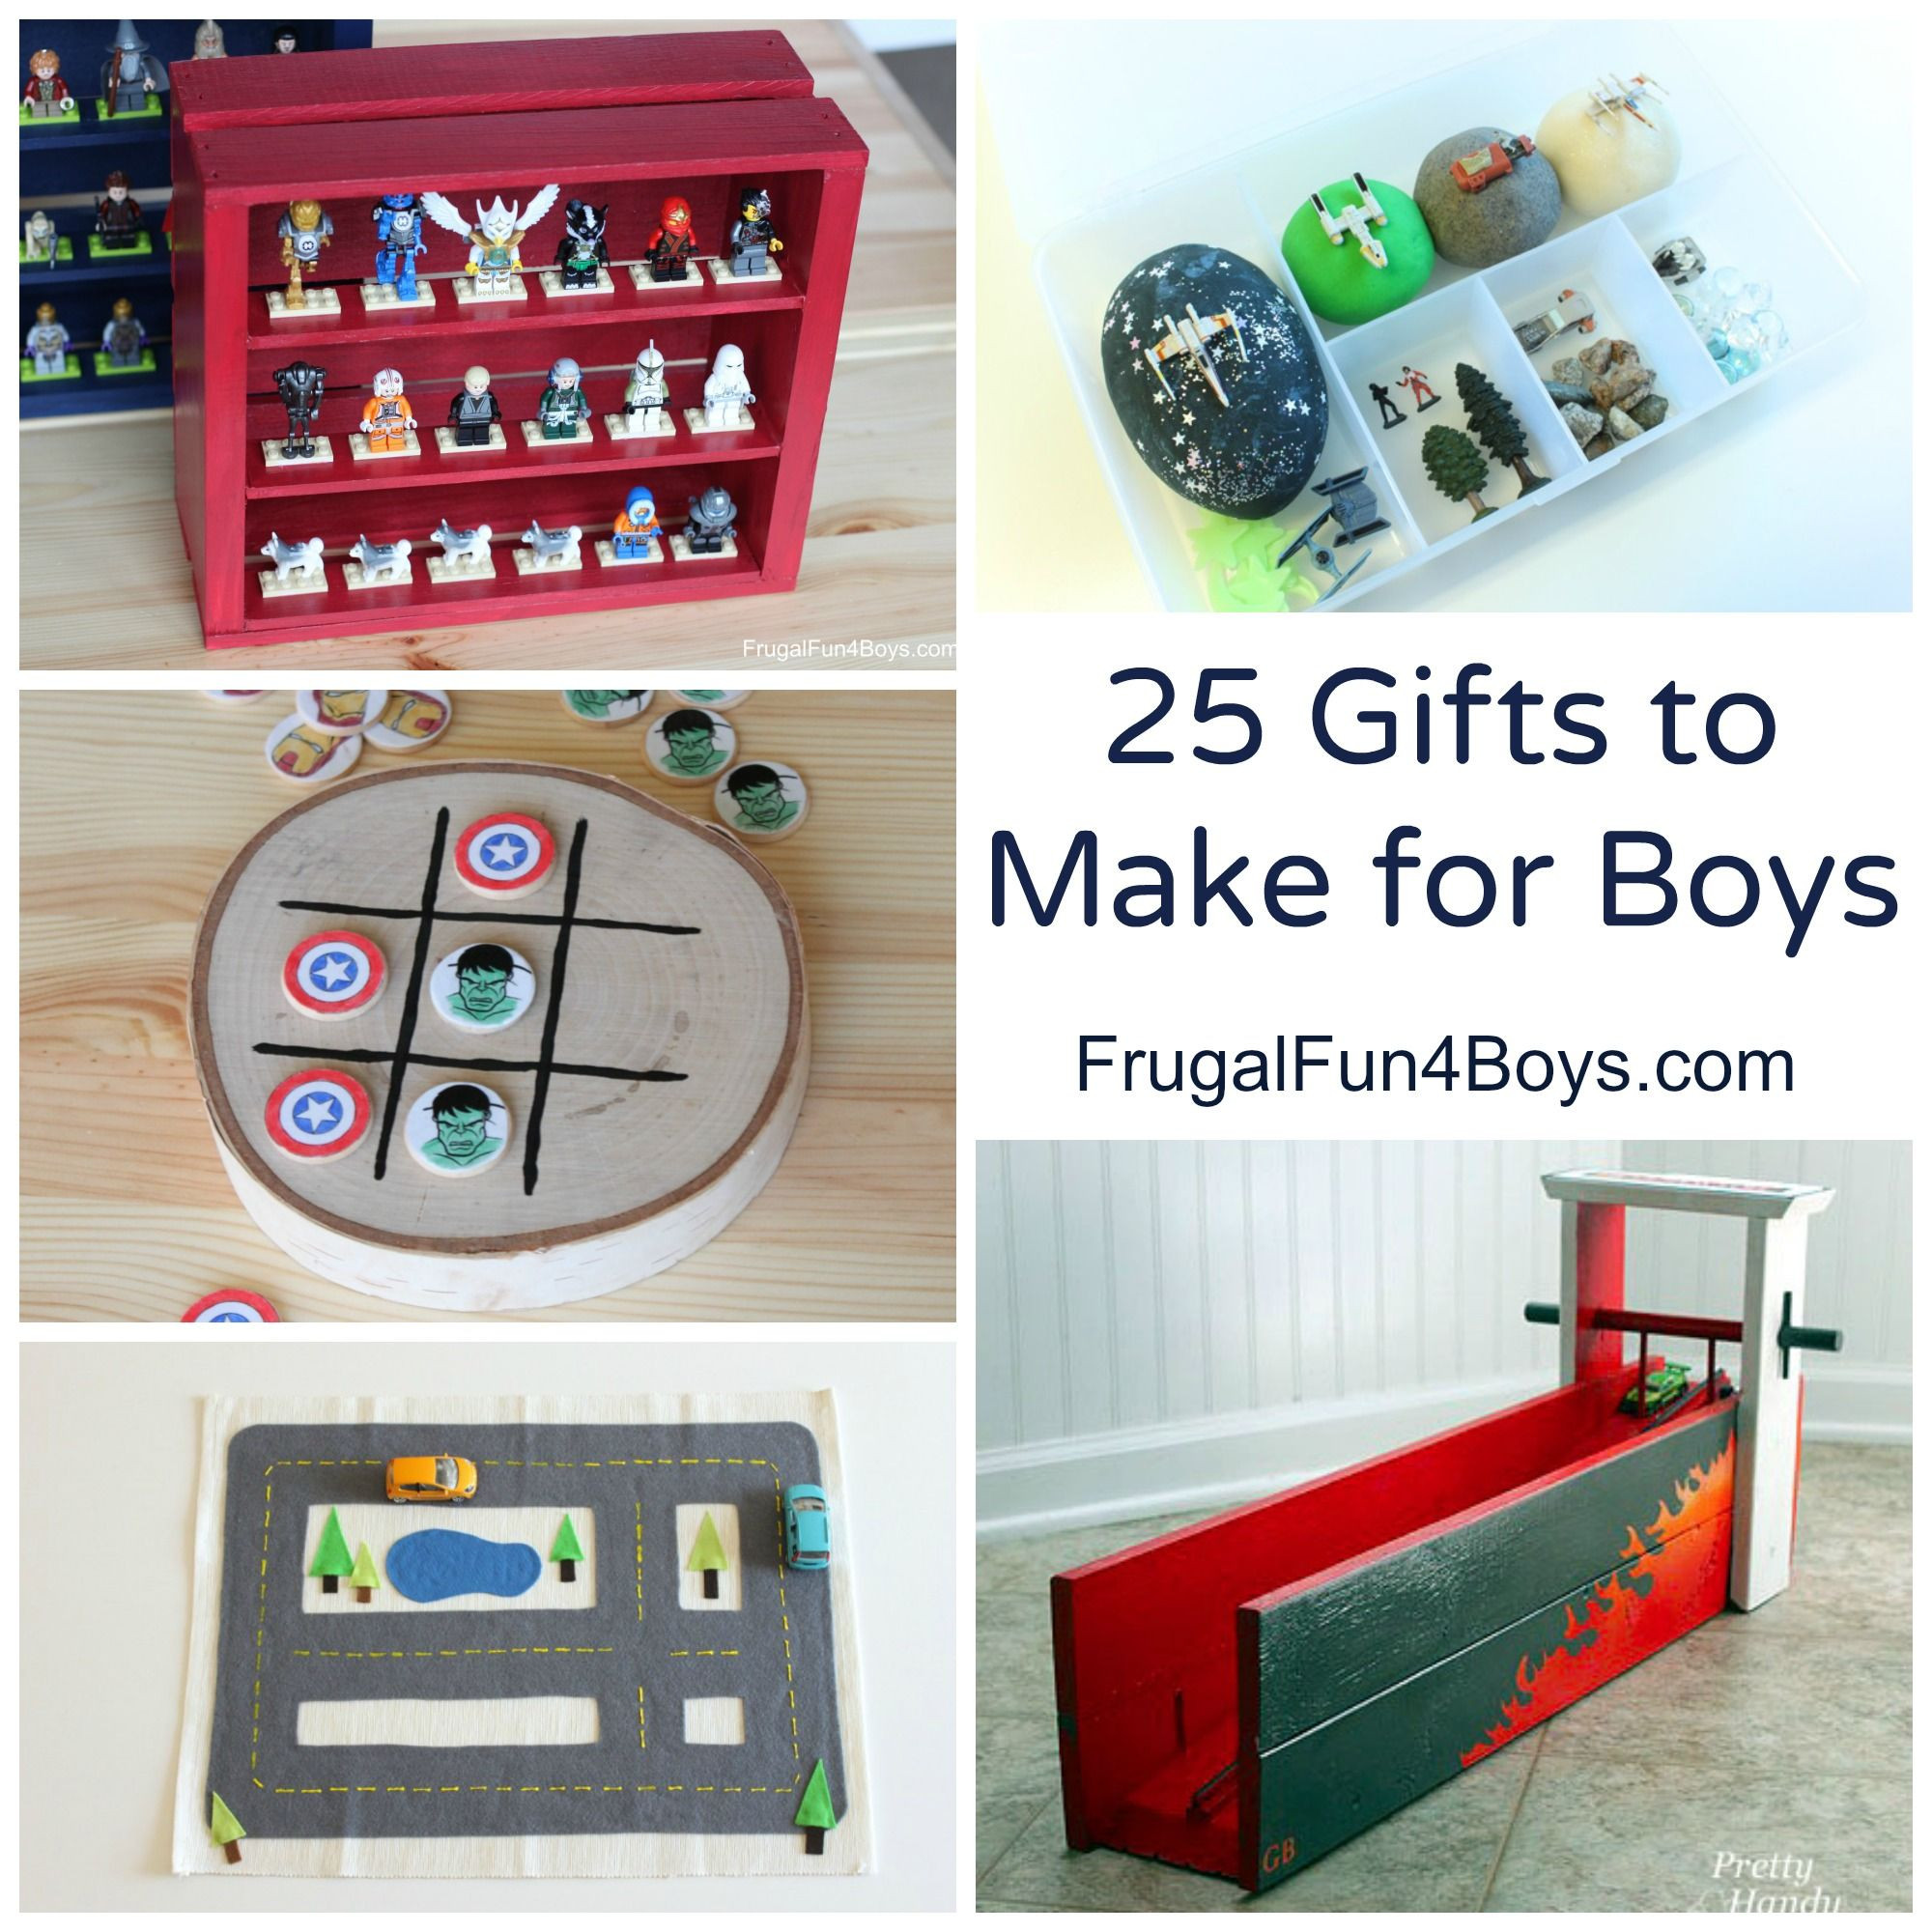 DIY Christmas Gift For Boys
 25 More Homemade Gifts to Make for Boys